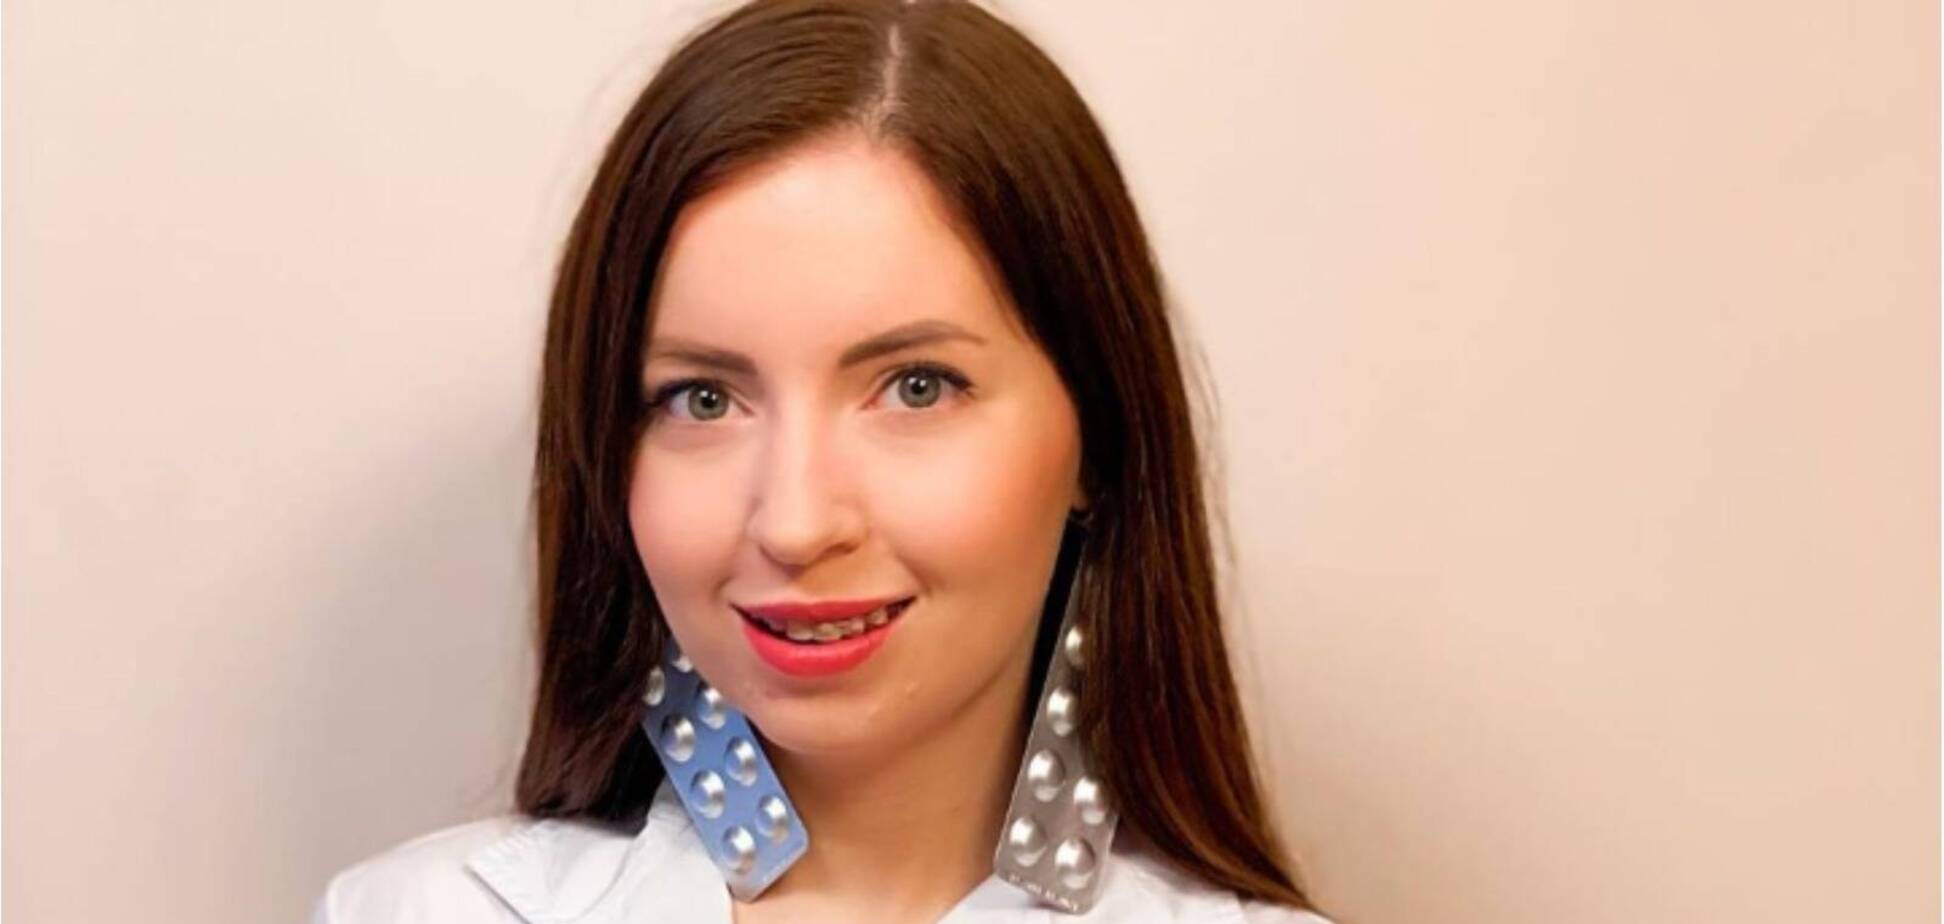 Скандальная блогерша Диденко закрутила новый роман